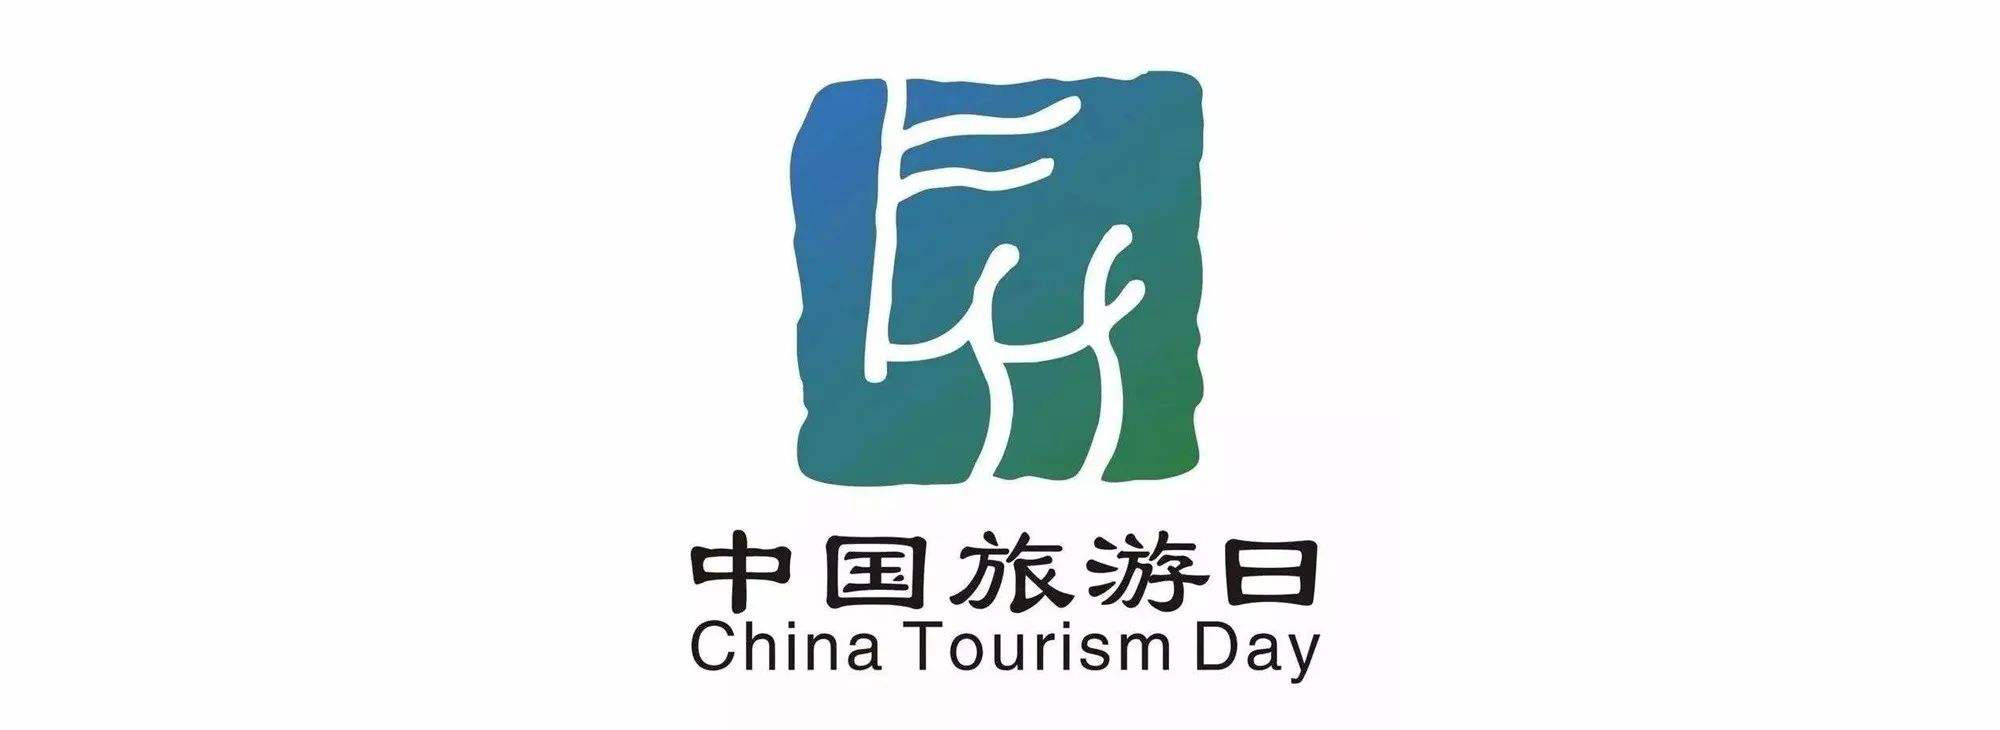 中国旅游日与《徐霞客游记》